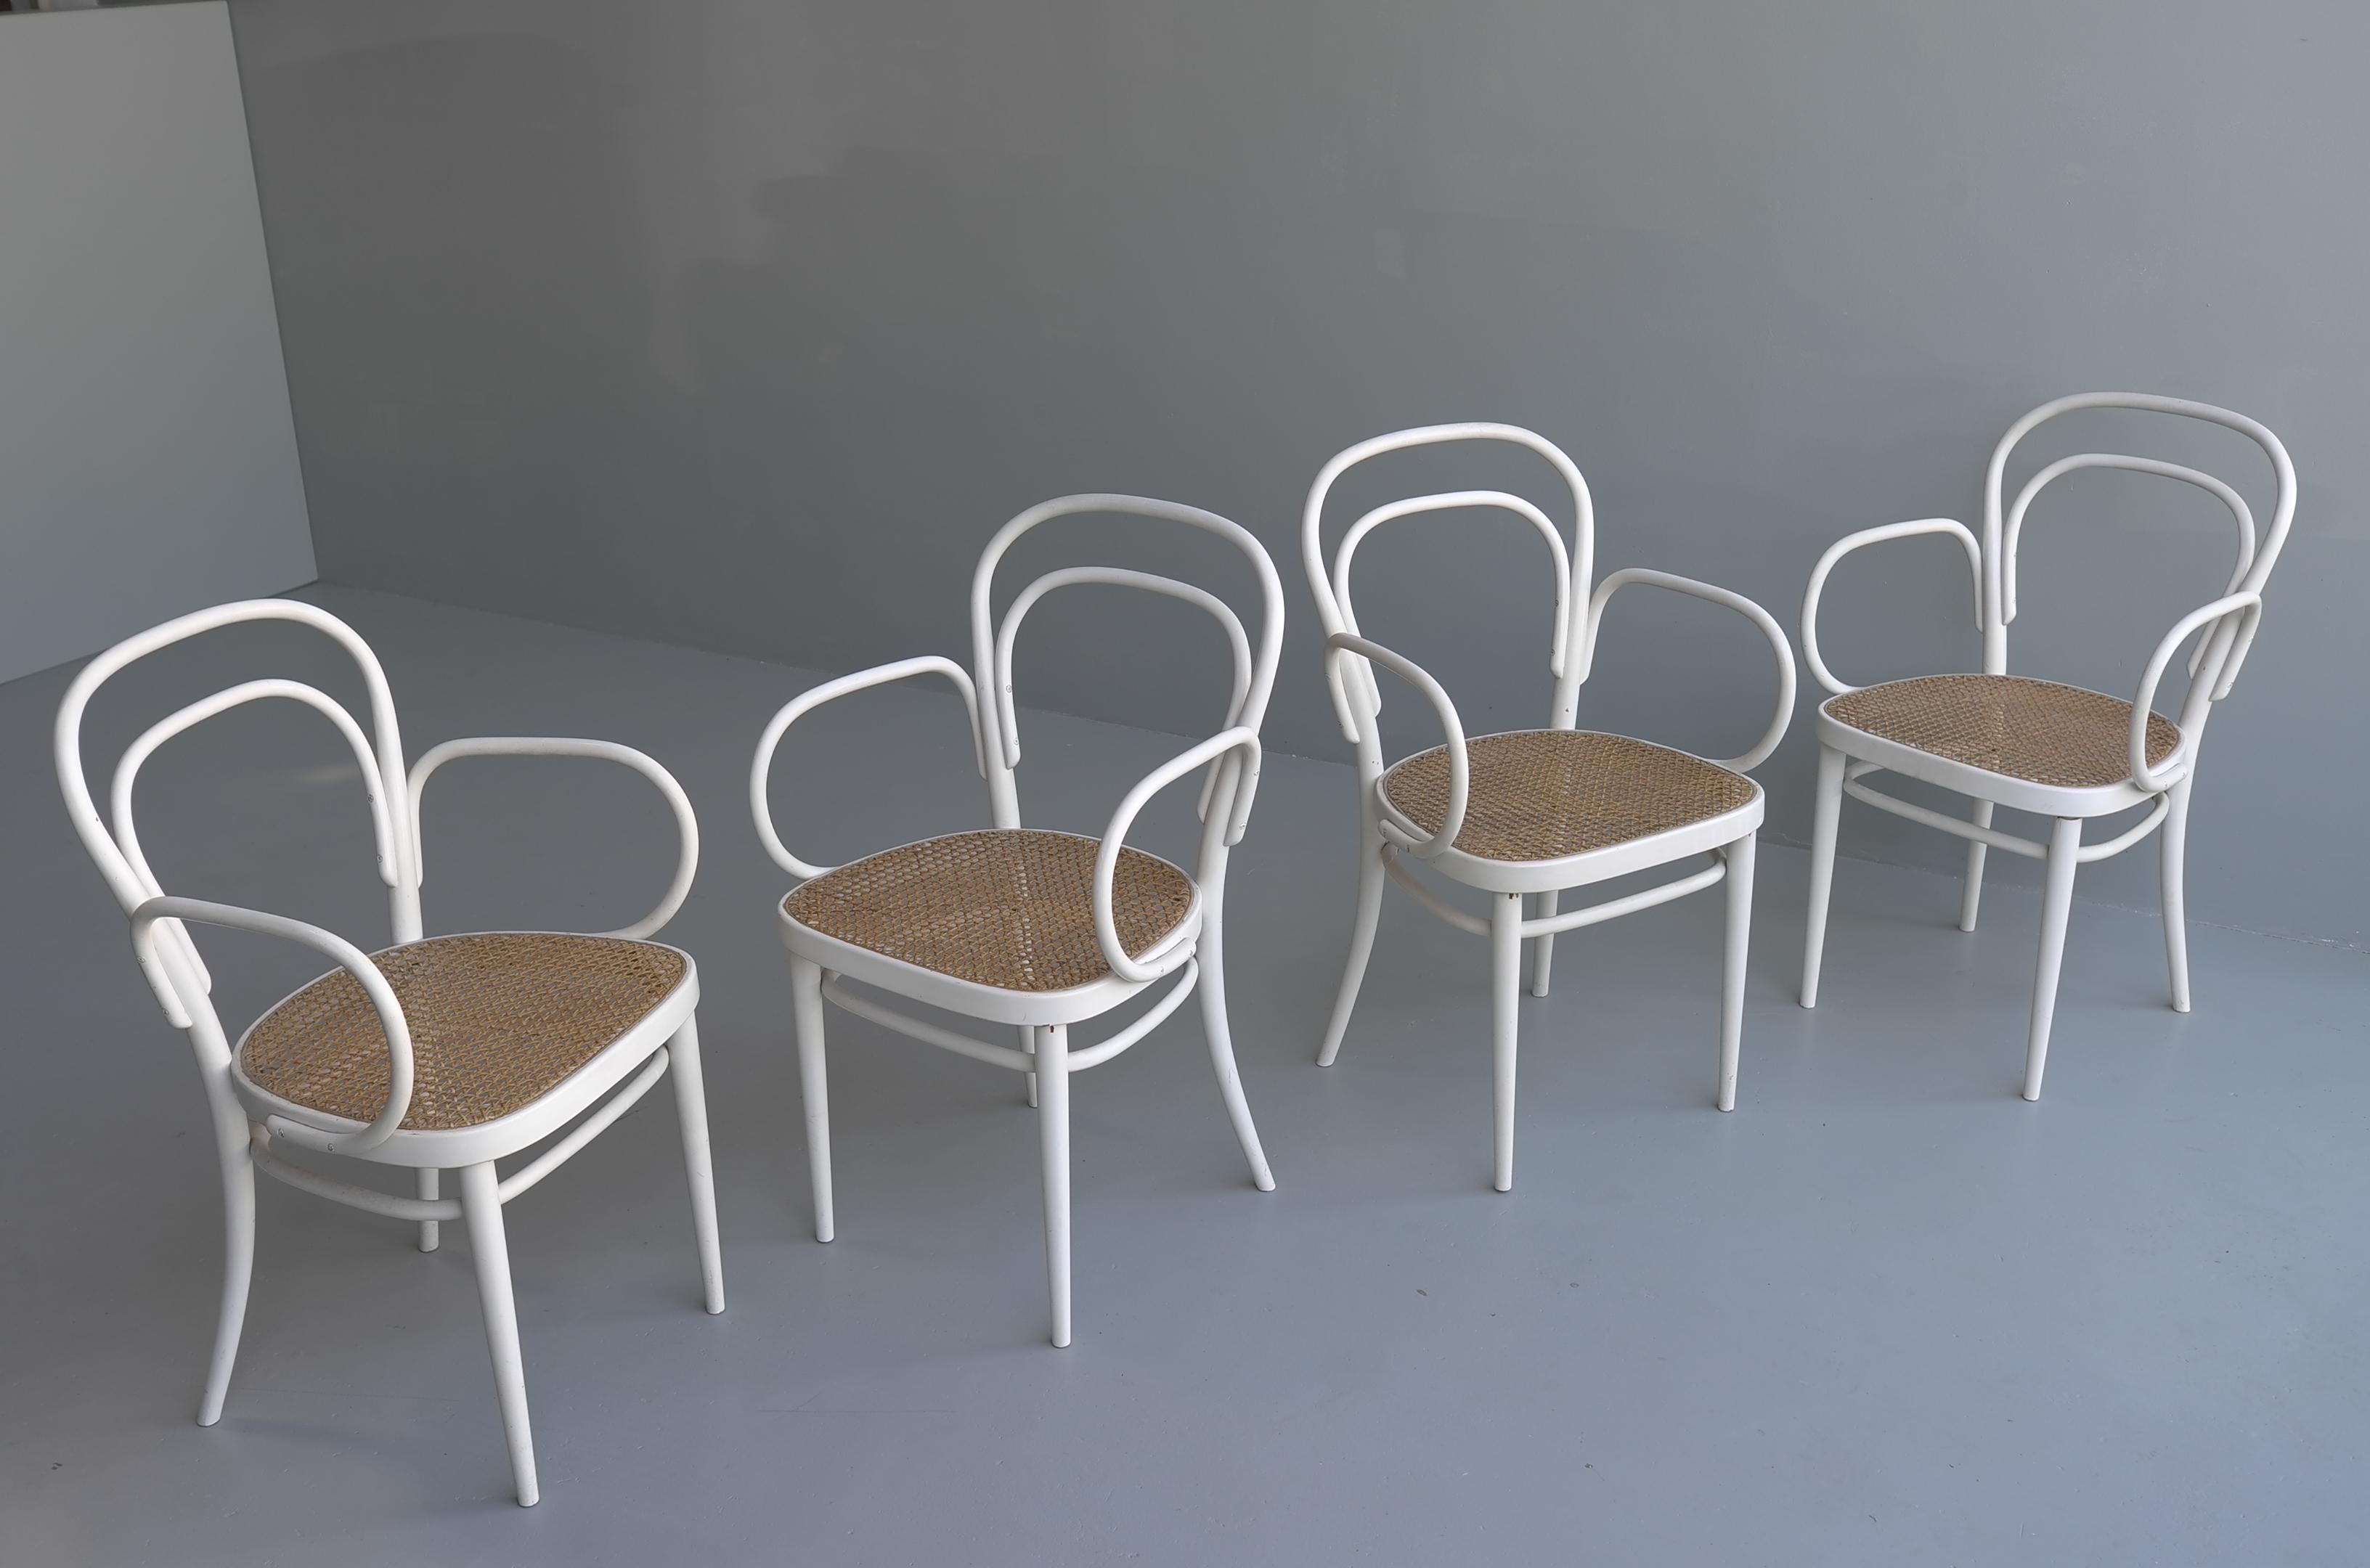 Ensemble de quatre fauteuils Thonet White nr.14 (produit ultérieurement sous le numéro 214) avec sièges en osier, Vienne, années 1960. Ces chaises portent d'anciennes étiquettes au lieu des timbres produits ultérieurement par Thonet.

 